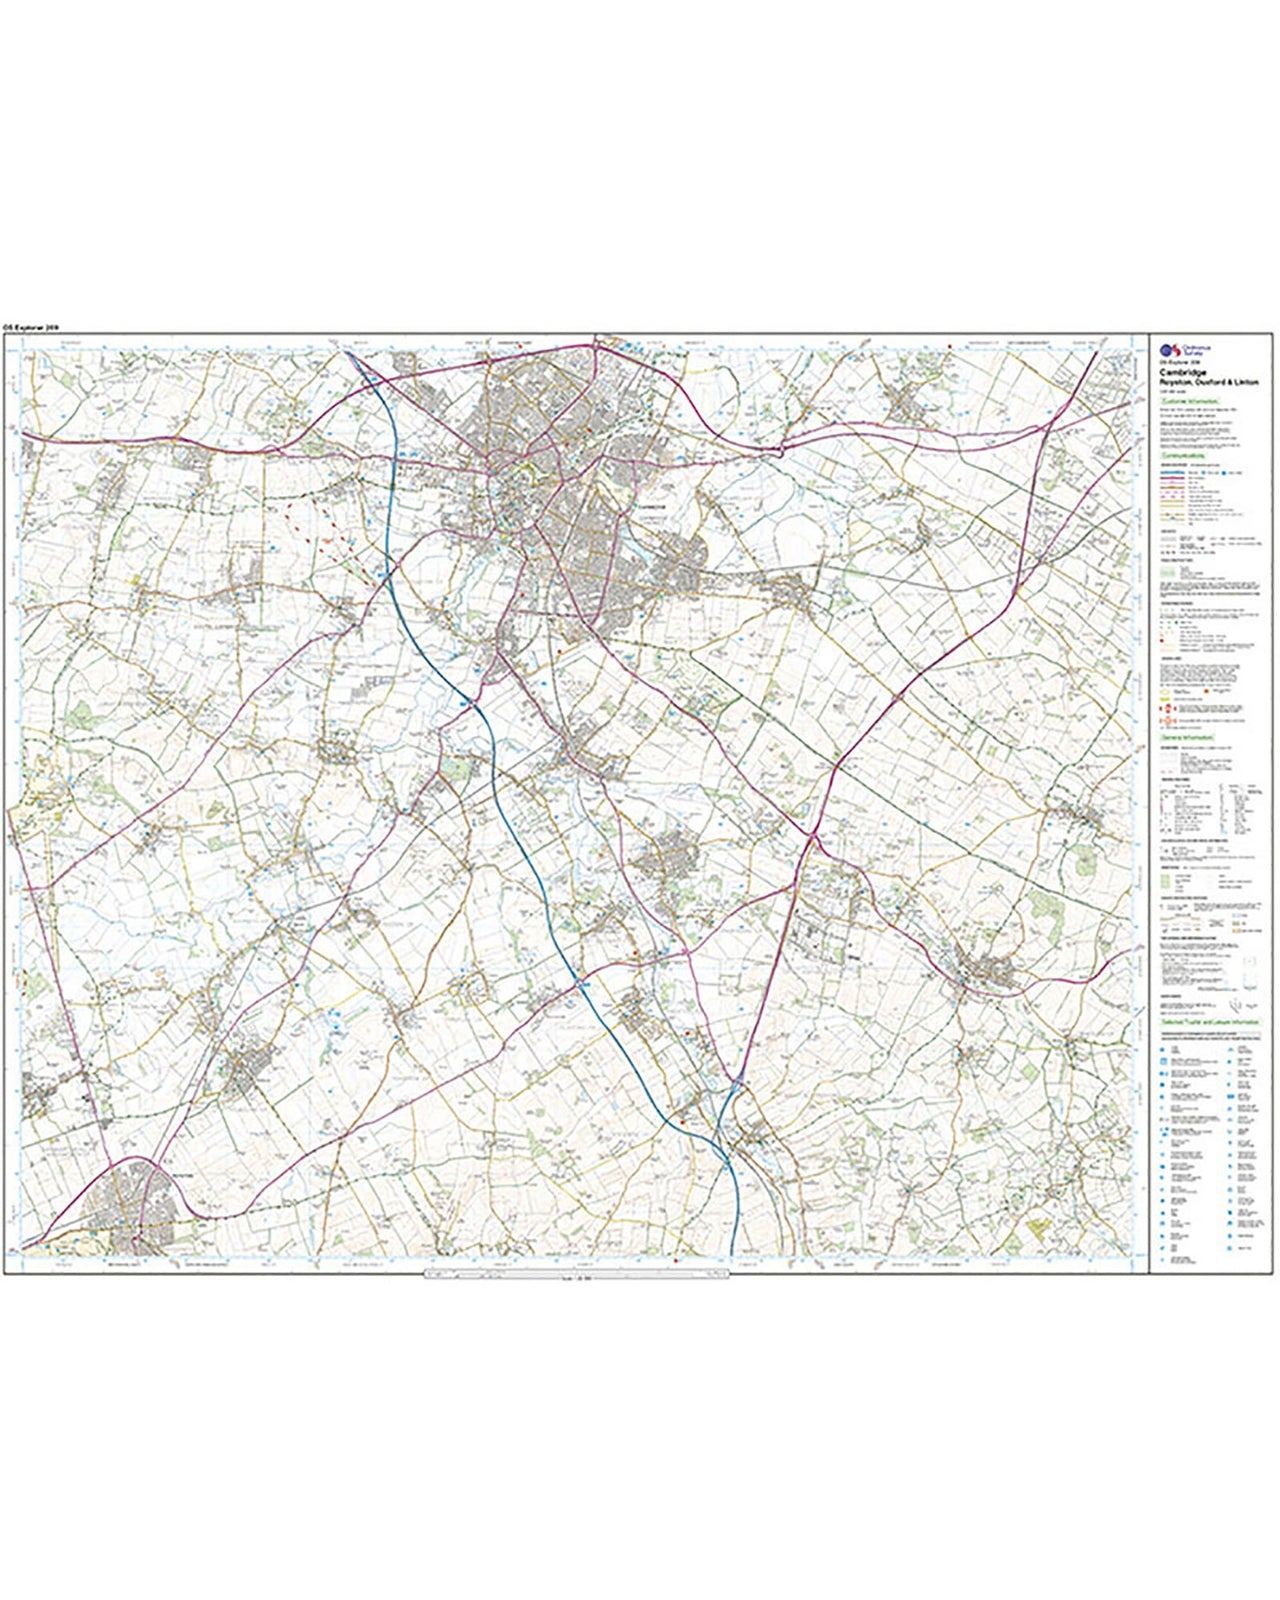 Ordnance Survey Cambridge, Royston, Duxford & Linton - OS Explorer 209 Map